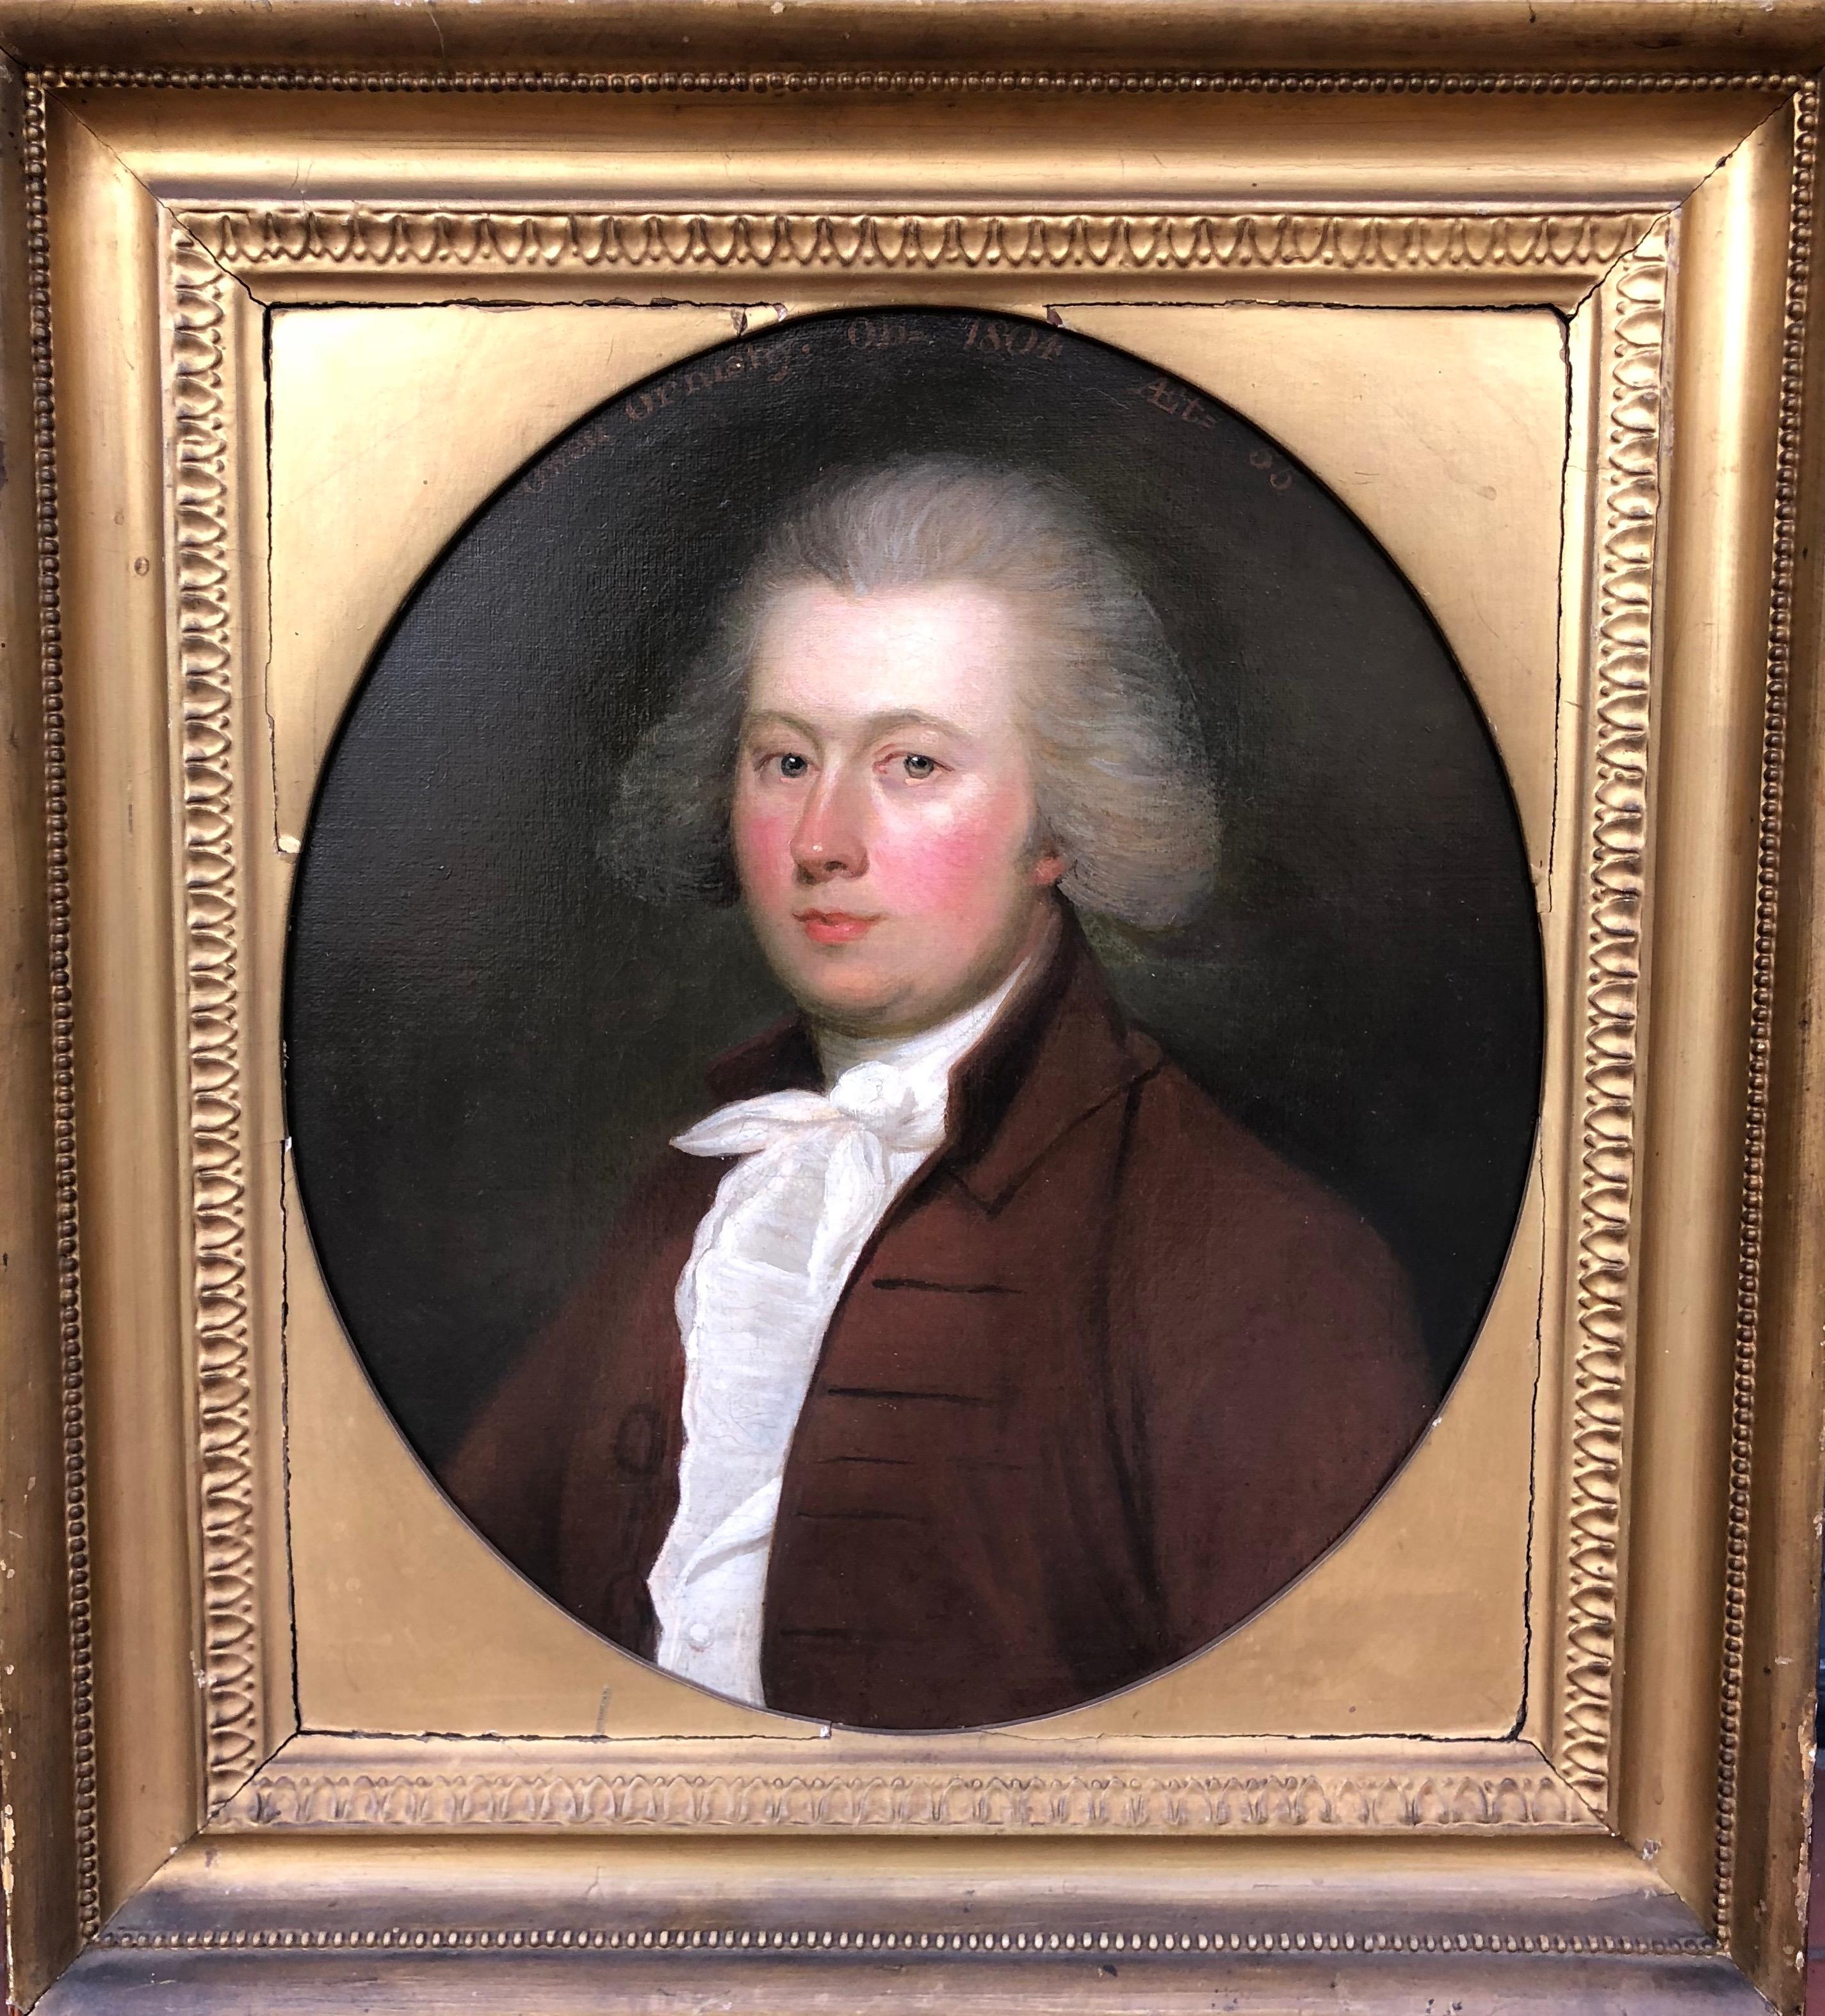 Attributed to Gainsborough Dupont Portrait Painting – Porträt von Owen Ormsby, Büstenlänge, in braunem Mantel